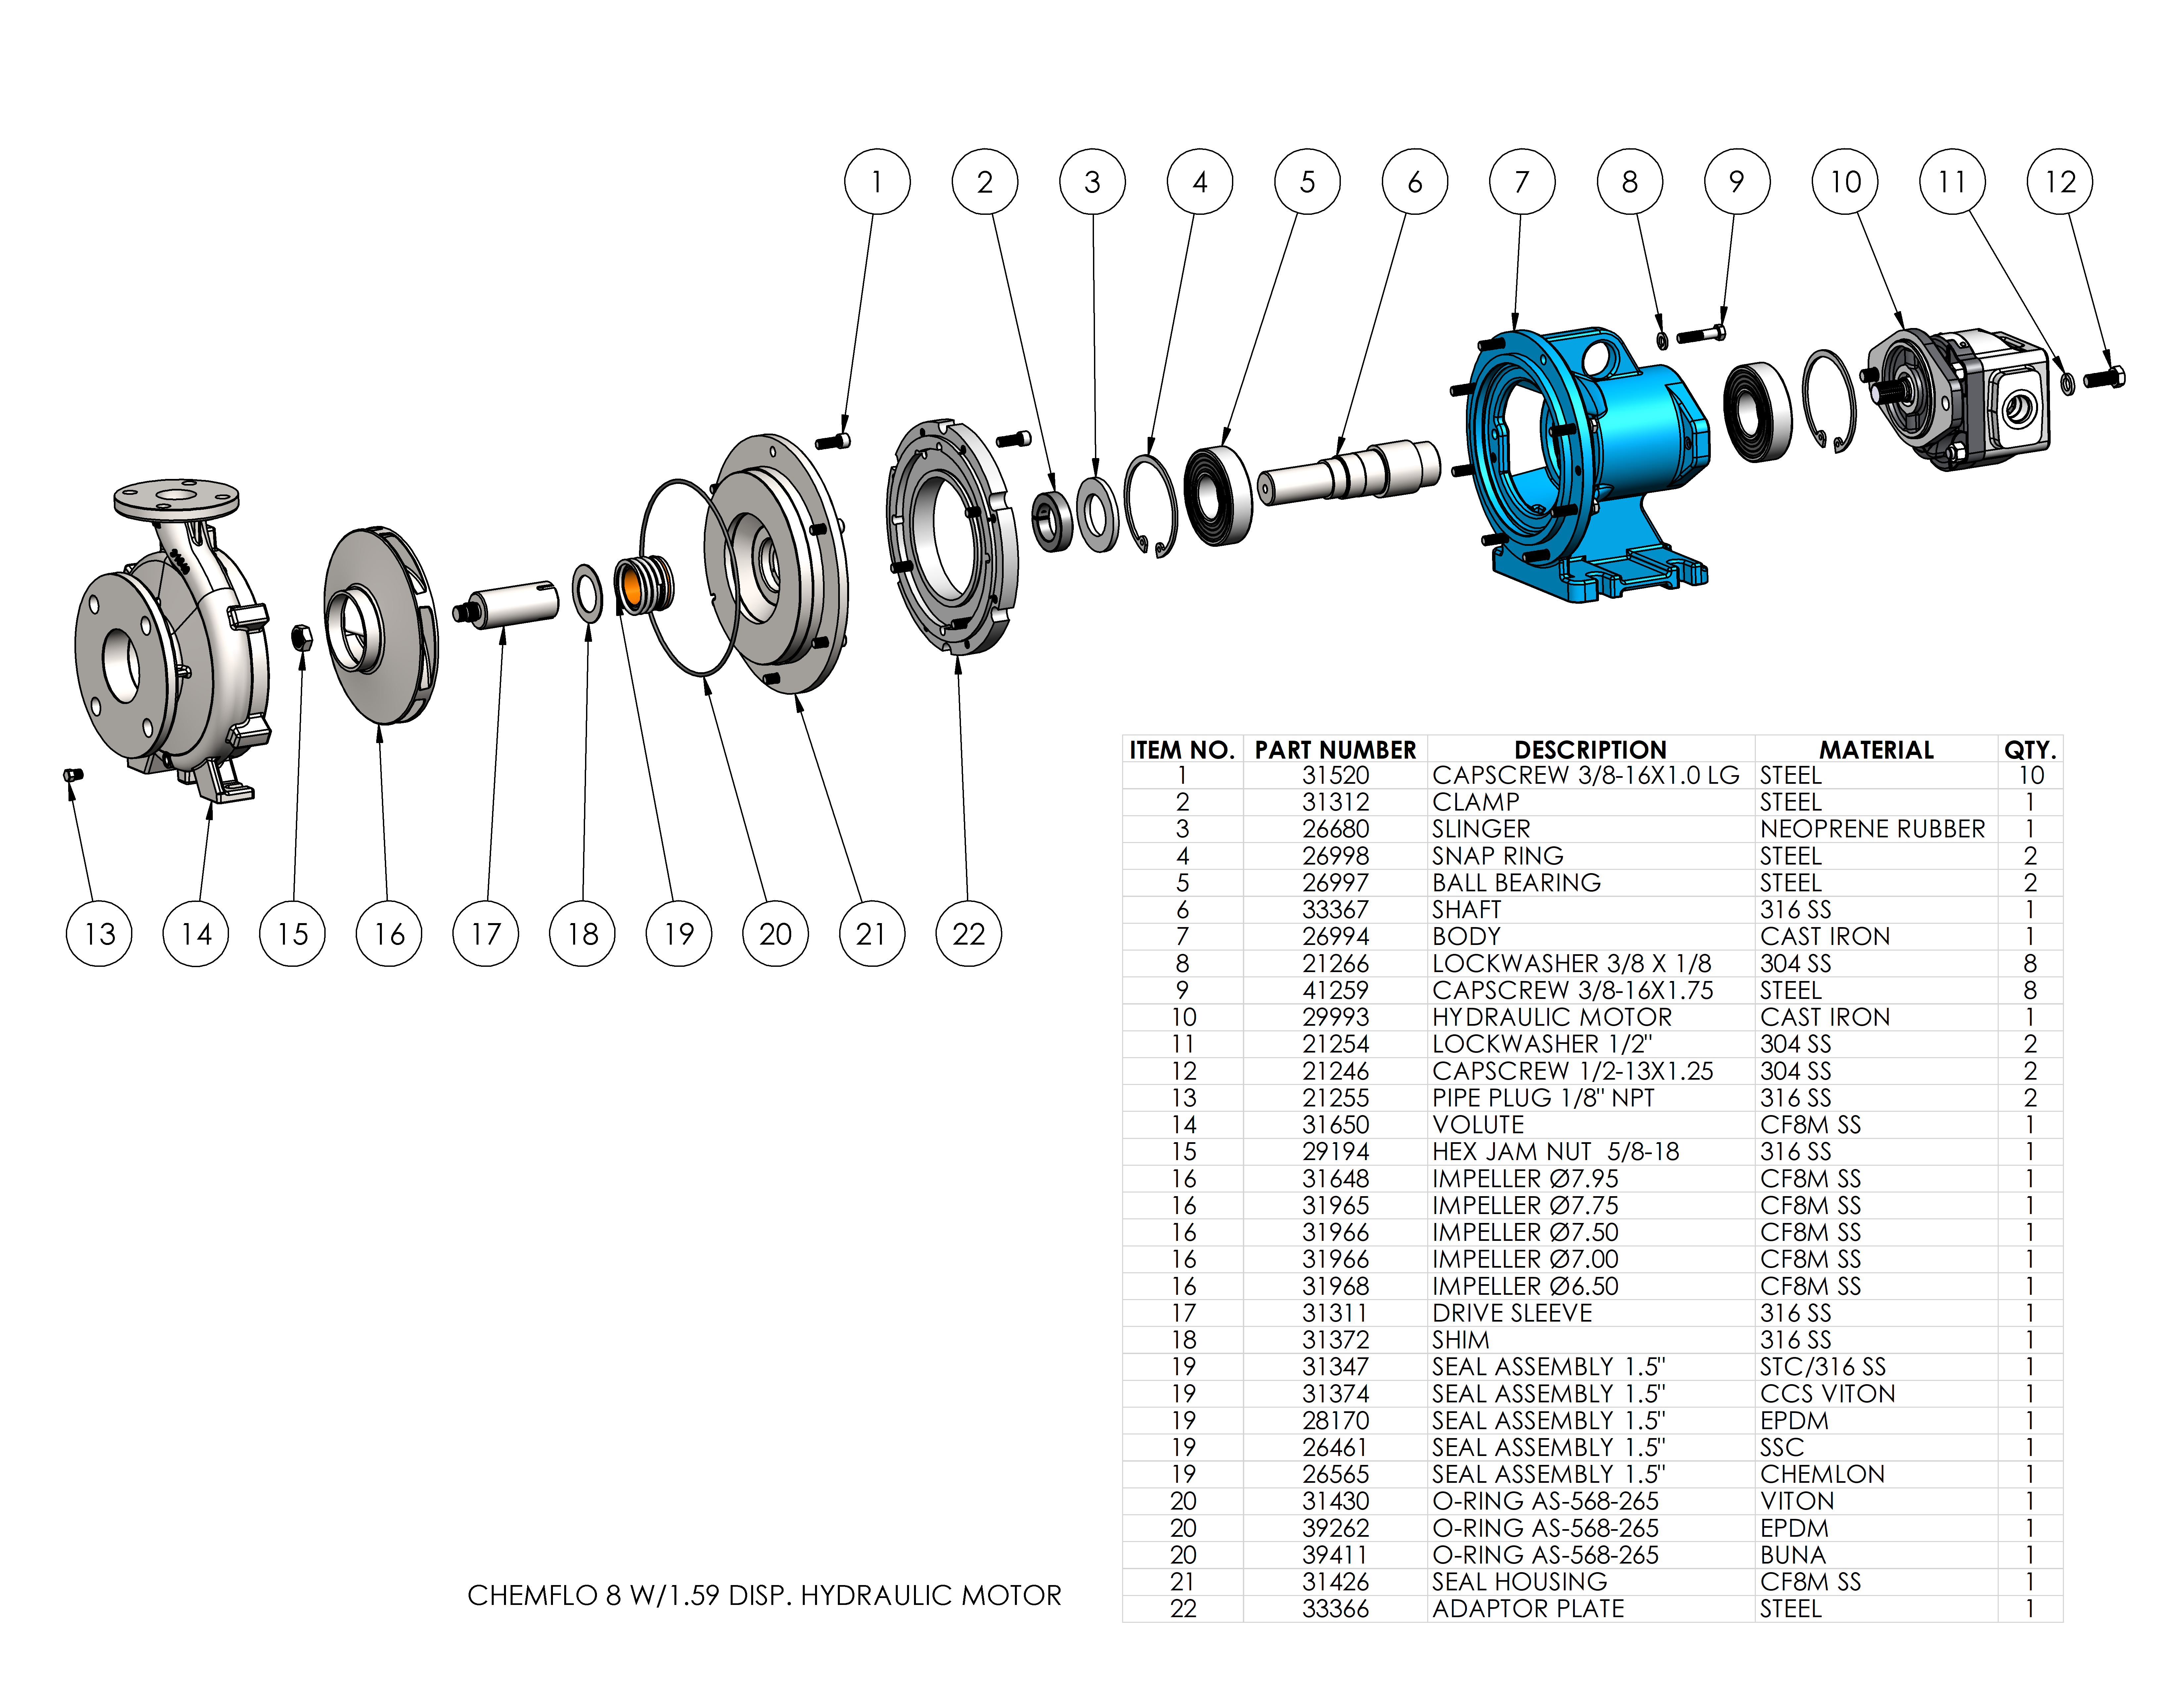 chemflo-8-hydraulic_parts-list-chemflo-8-w-1-59-disp-hydraulic-motor